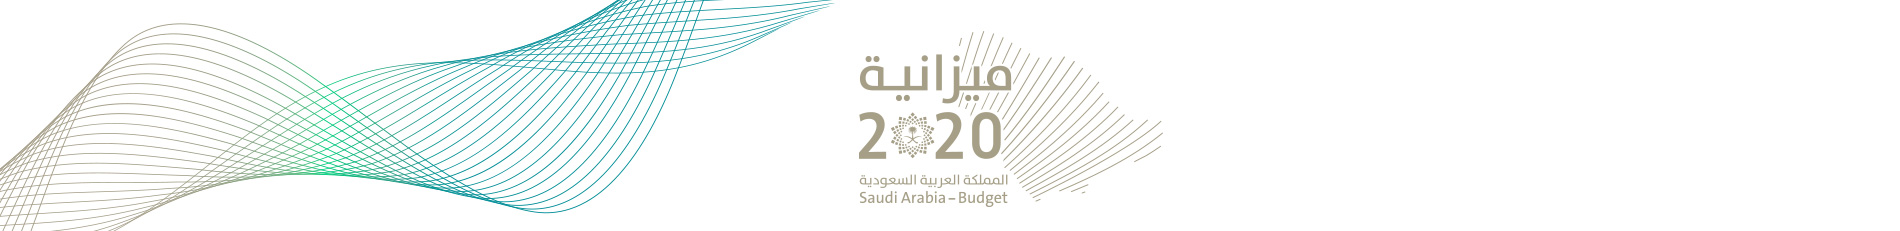 الميزانية العامة لعام 2020